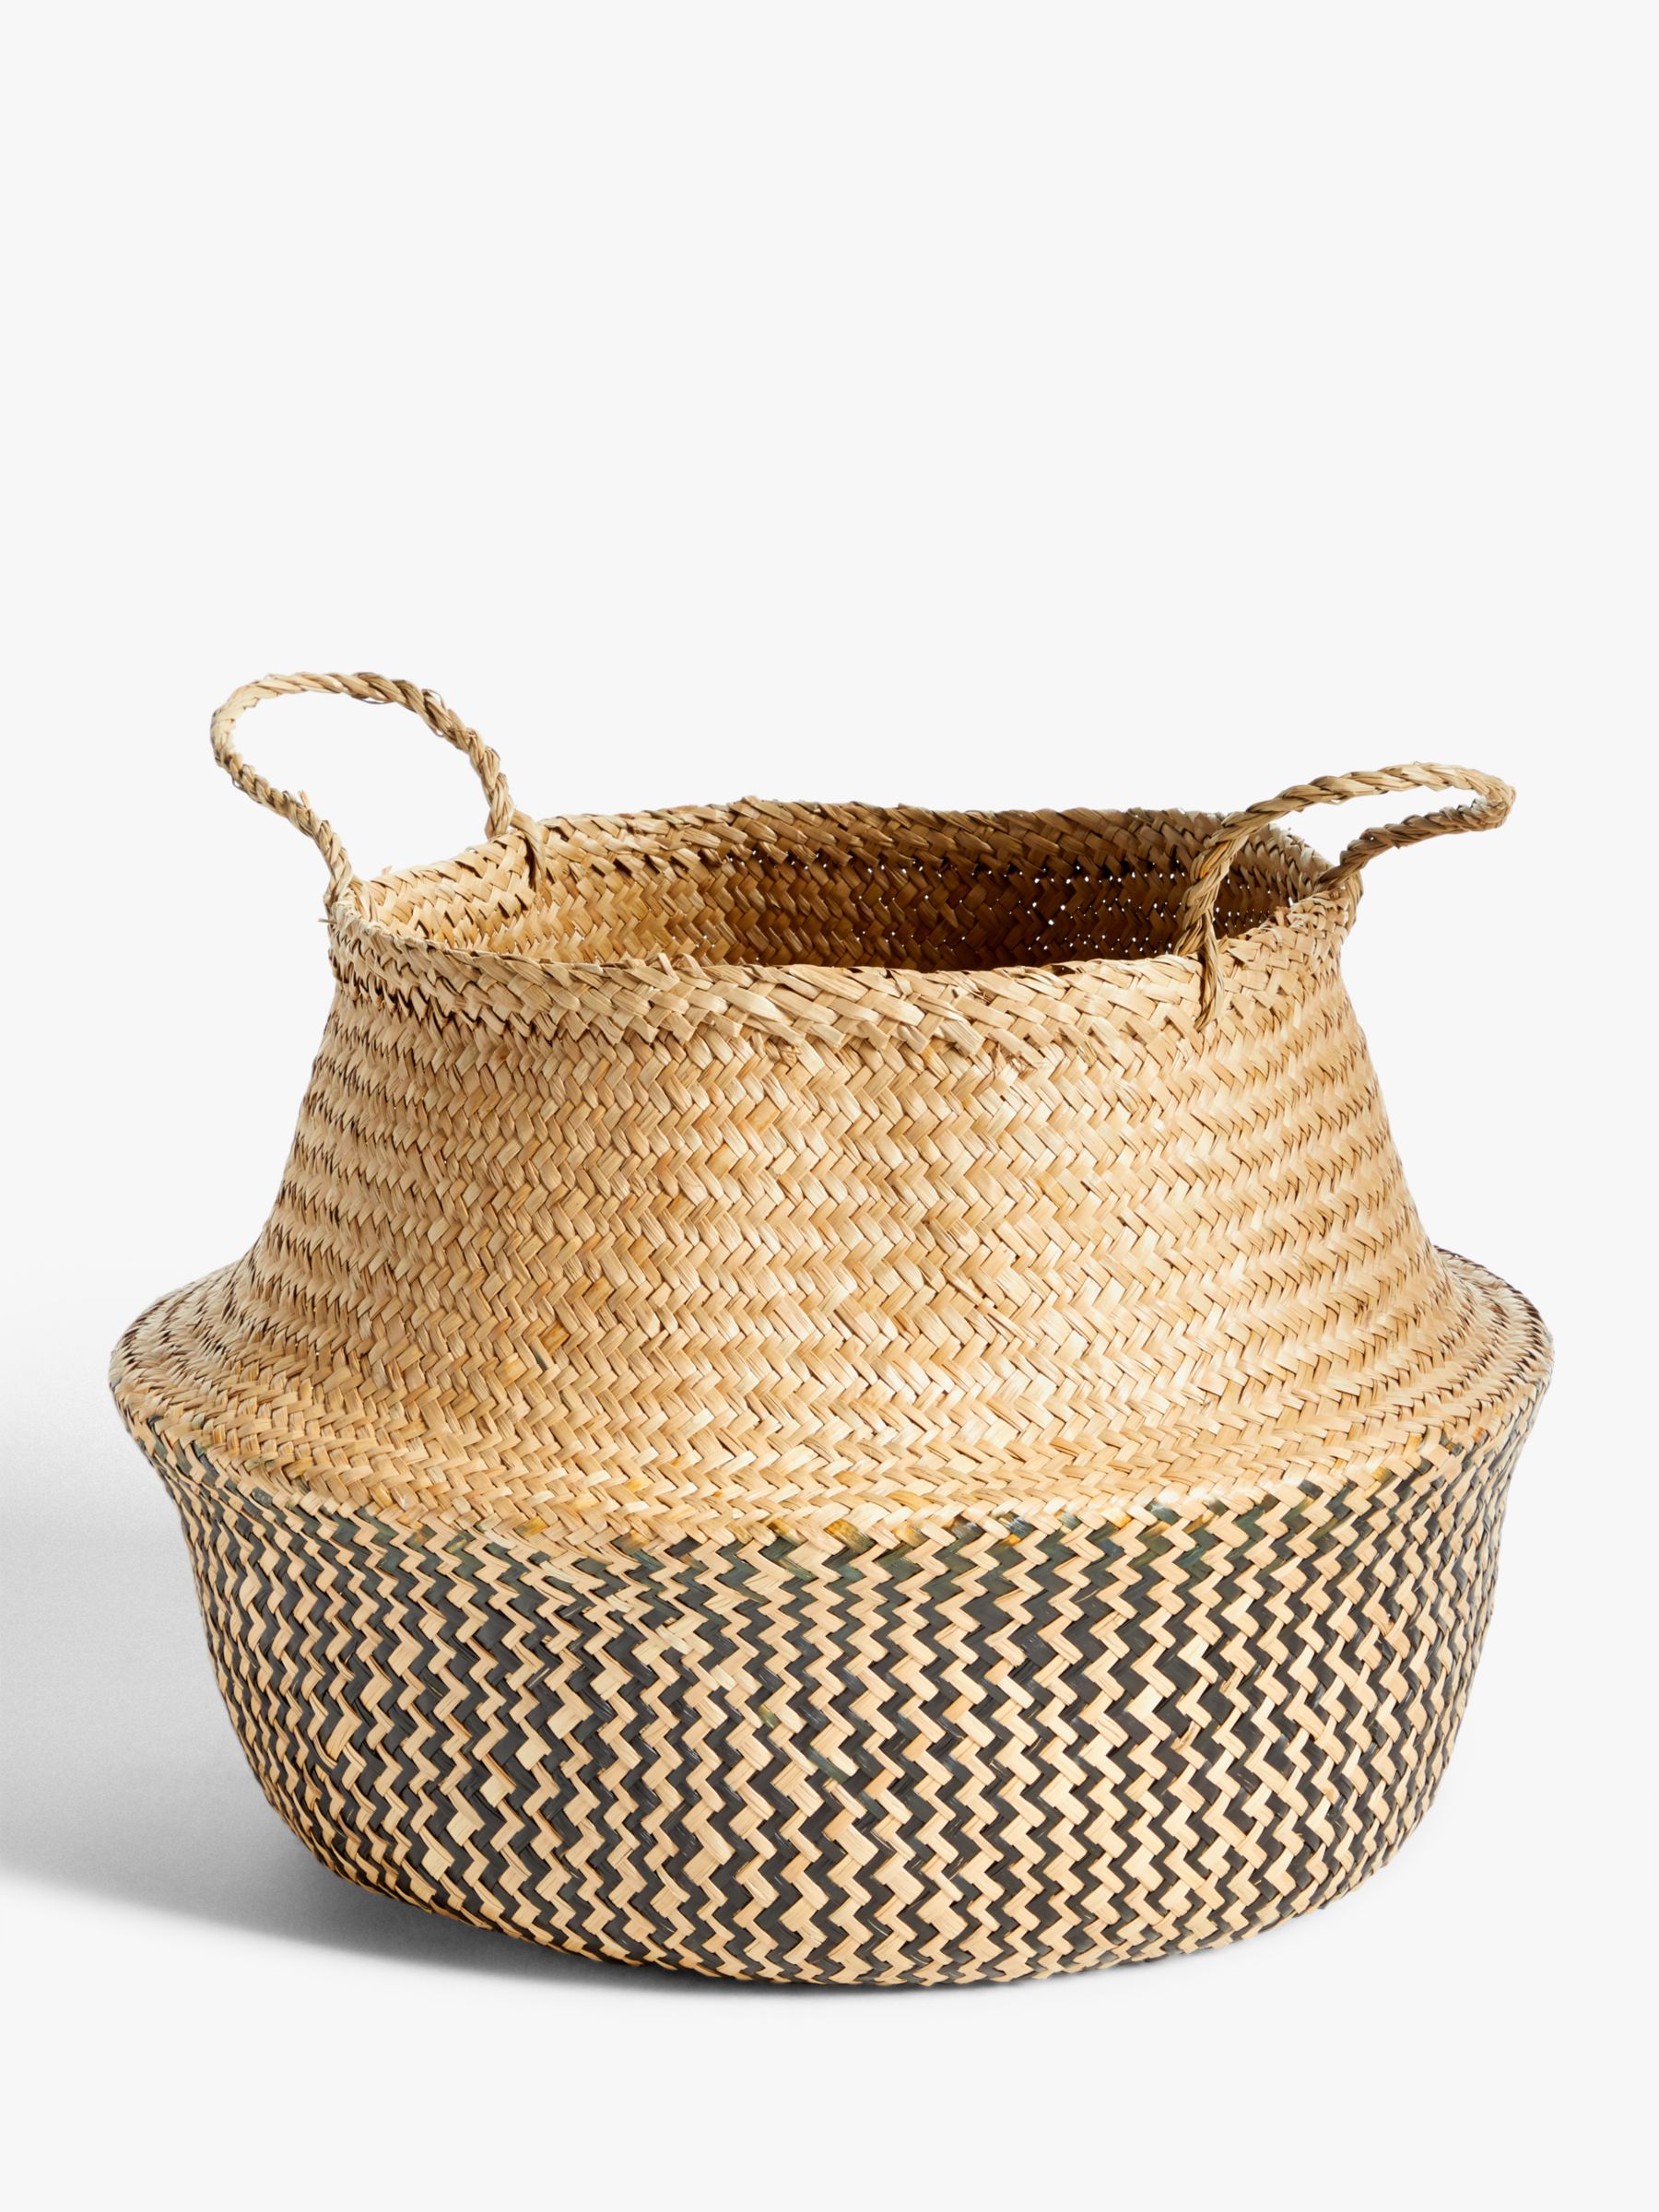 Seagrass Storage Baskets - Seagrass Storage Baskets - The Den & Now : Wicker & seagrass storage baskets from store.